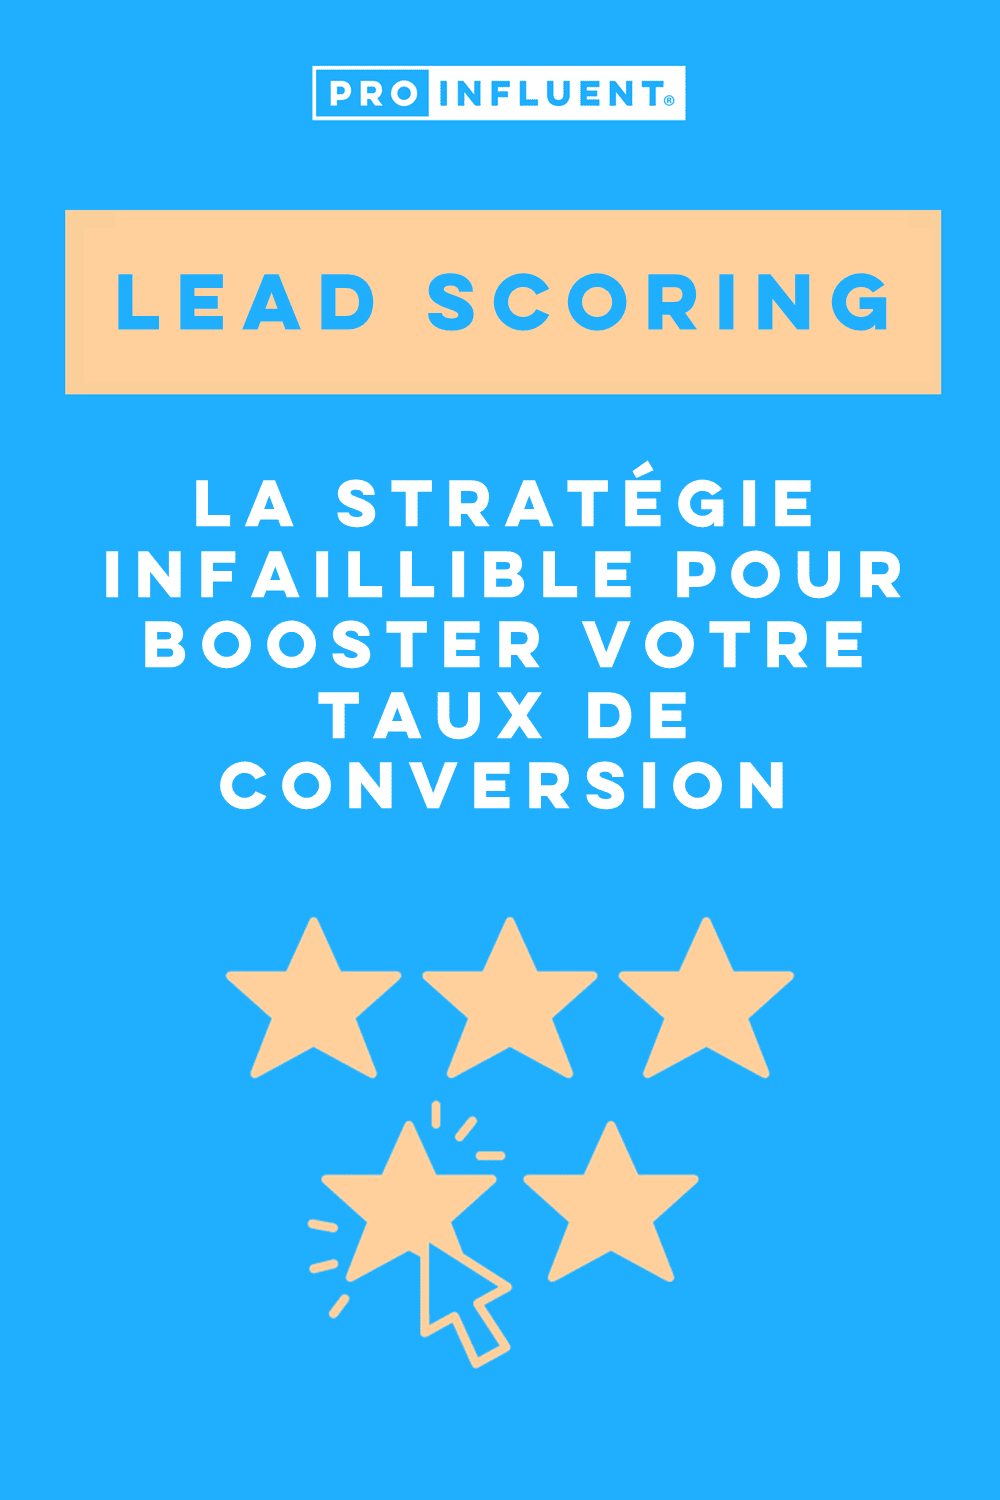 Lead scoring, la stratégie infaillible pour booster votre taux de conversion